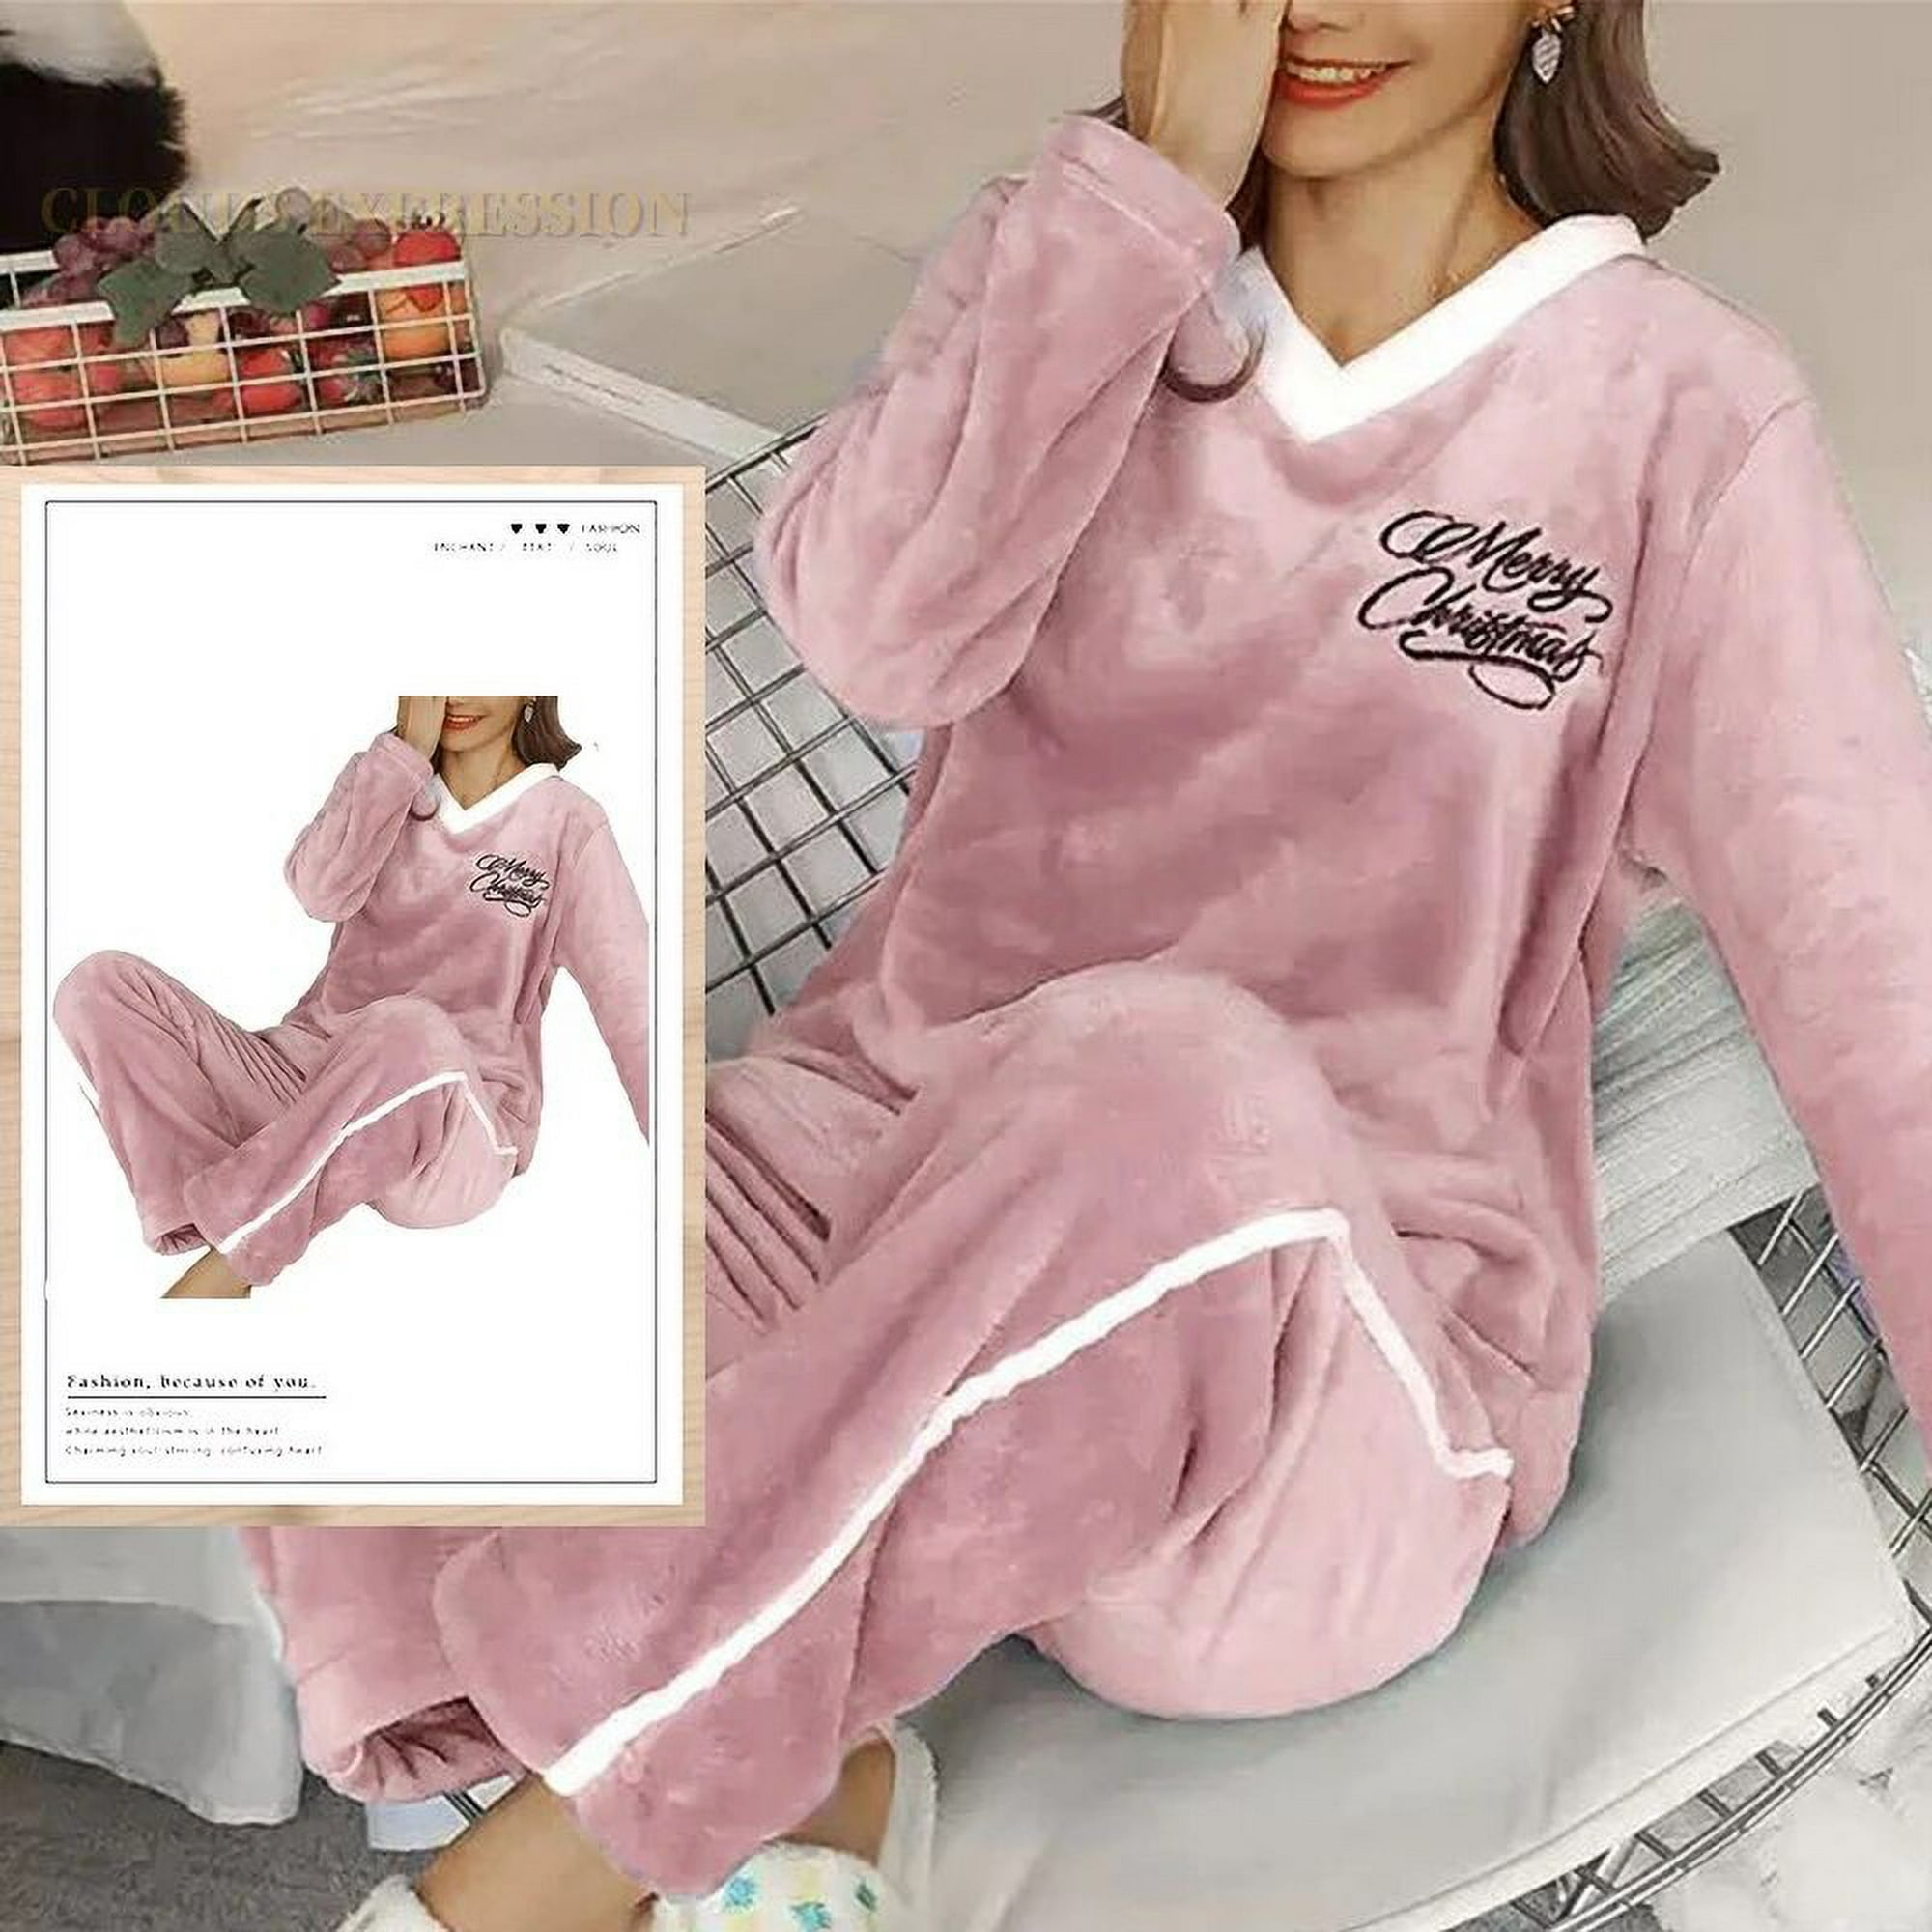 Pijama aterciopelado estampado Lilo & Stitch ©Disney - Pijamas